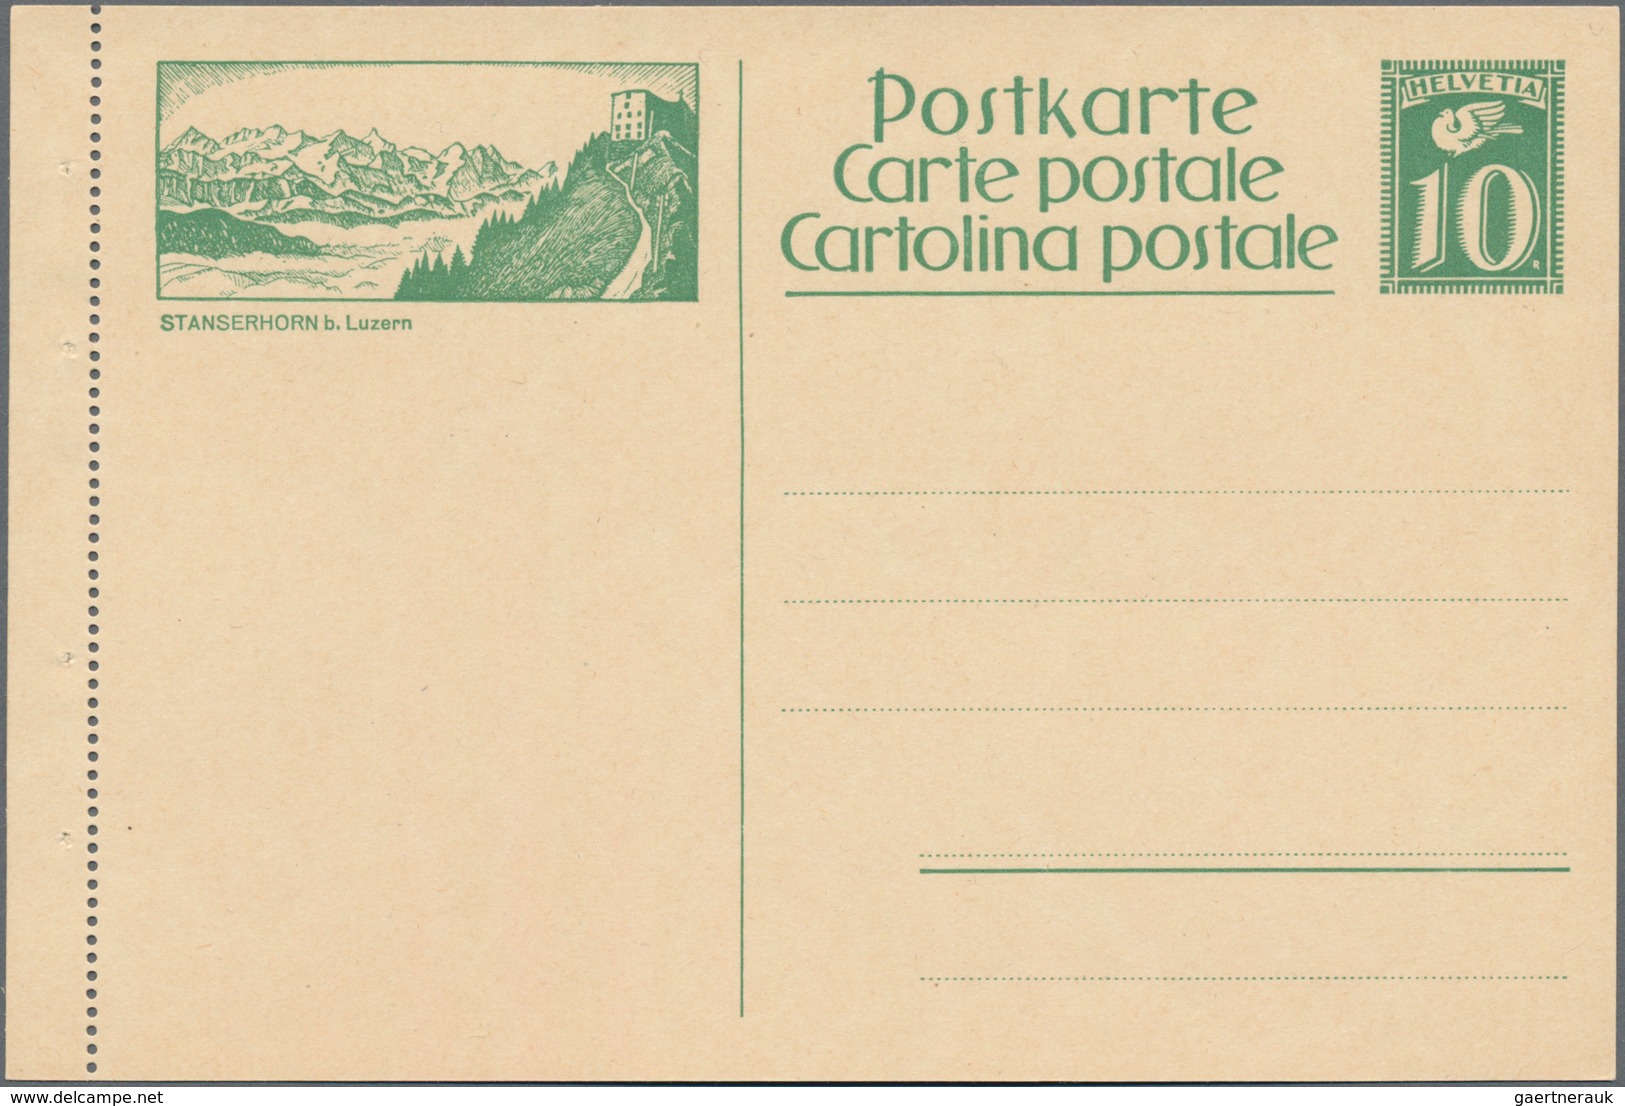 Schweiz - Ganzsachen: 1923-29 Sammlung von 20 verschiedenen, kompletten Serien der Bildpostkarten (f